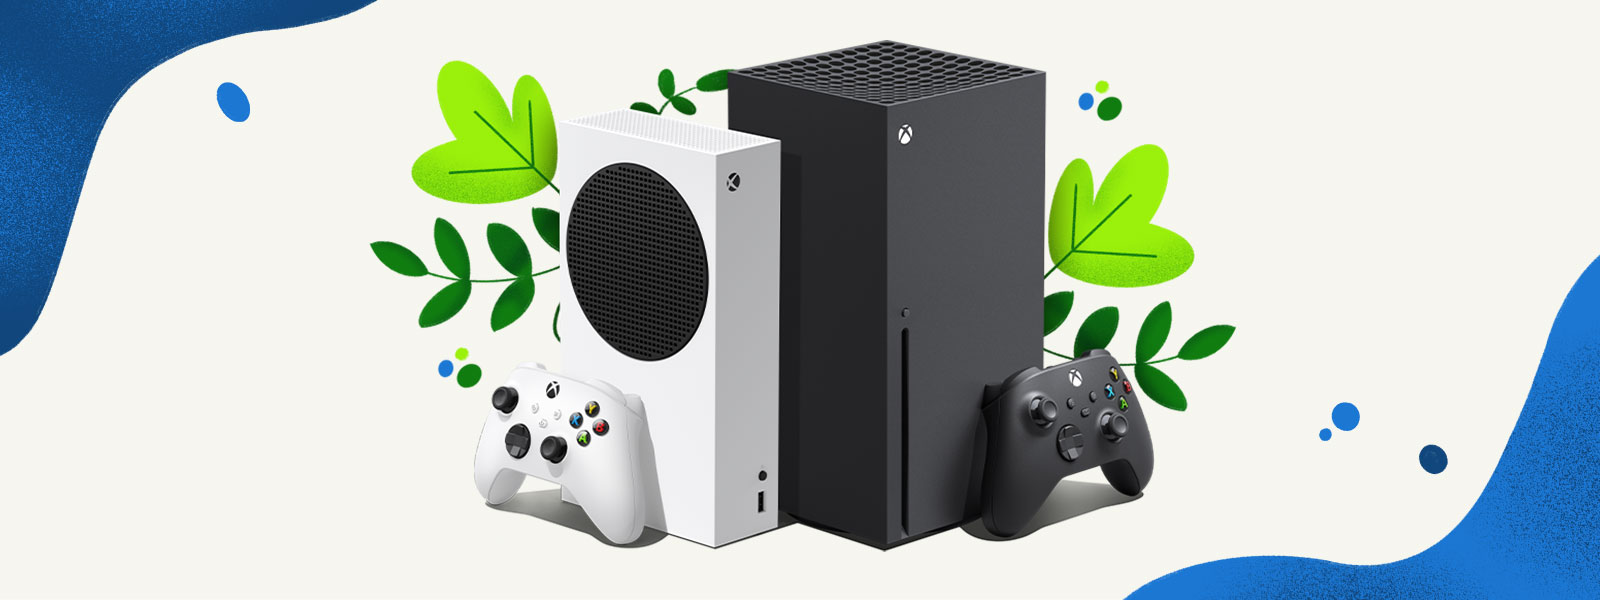 Konzole Xbox Series X a Xbox Series S stojí vedle sebe před pozadím zdobeným zelení a kapkami modré vody.